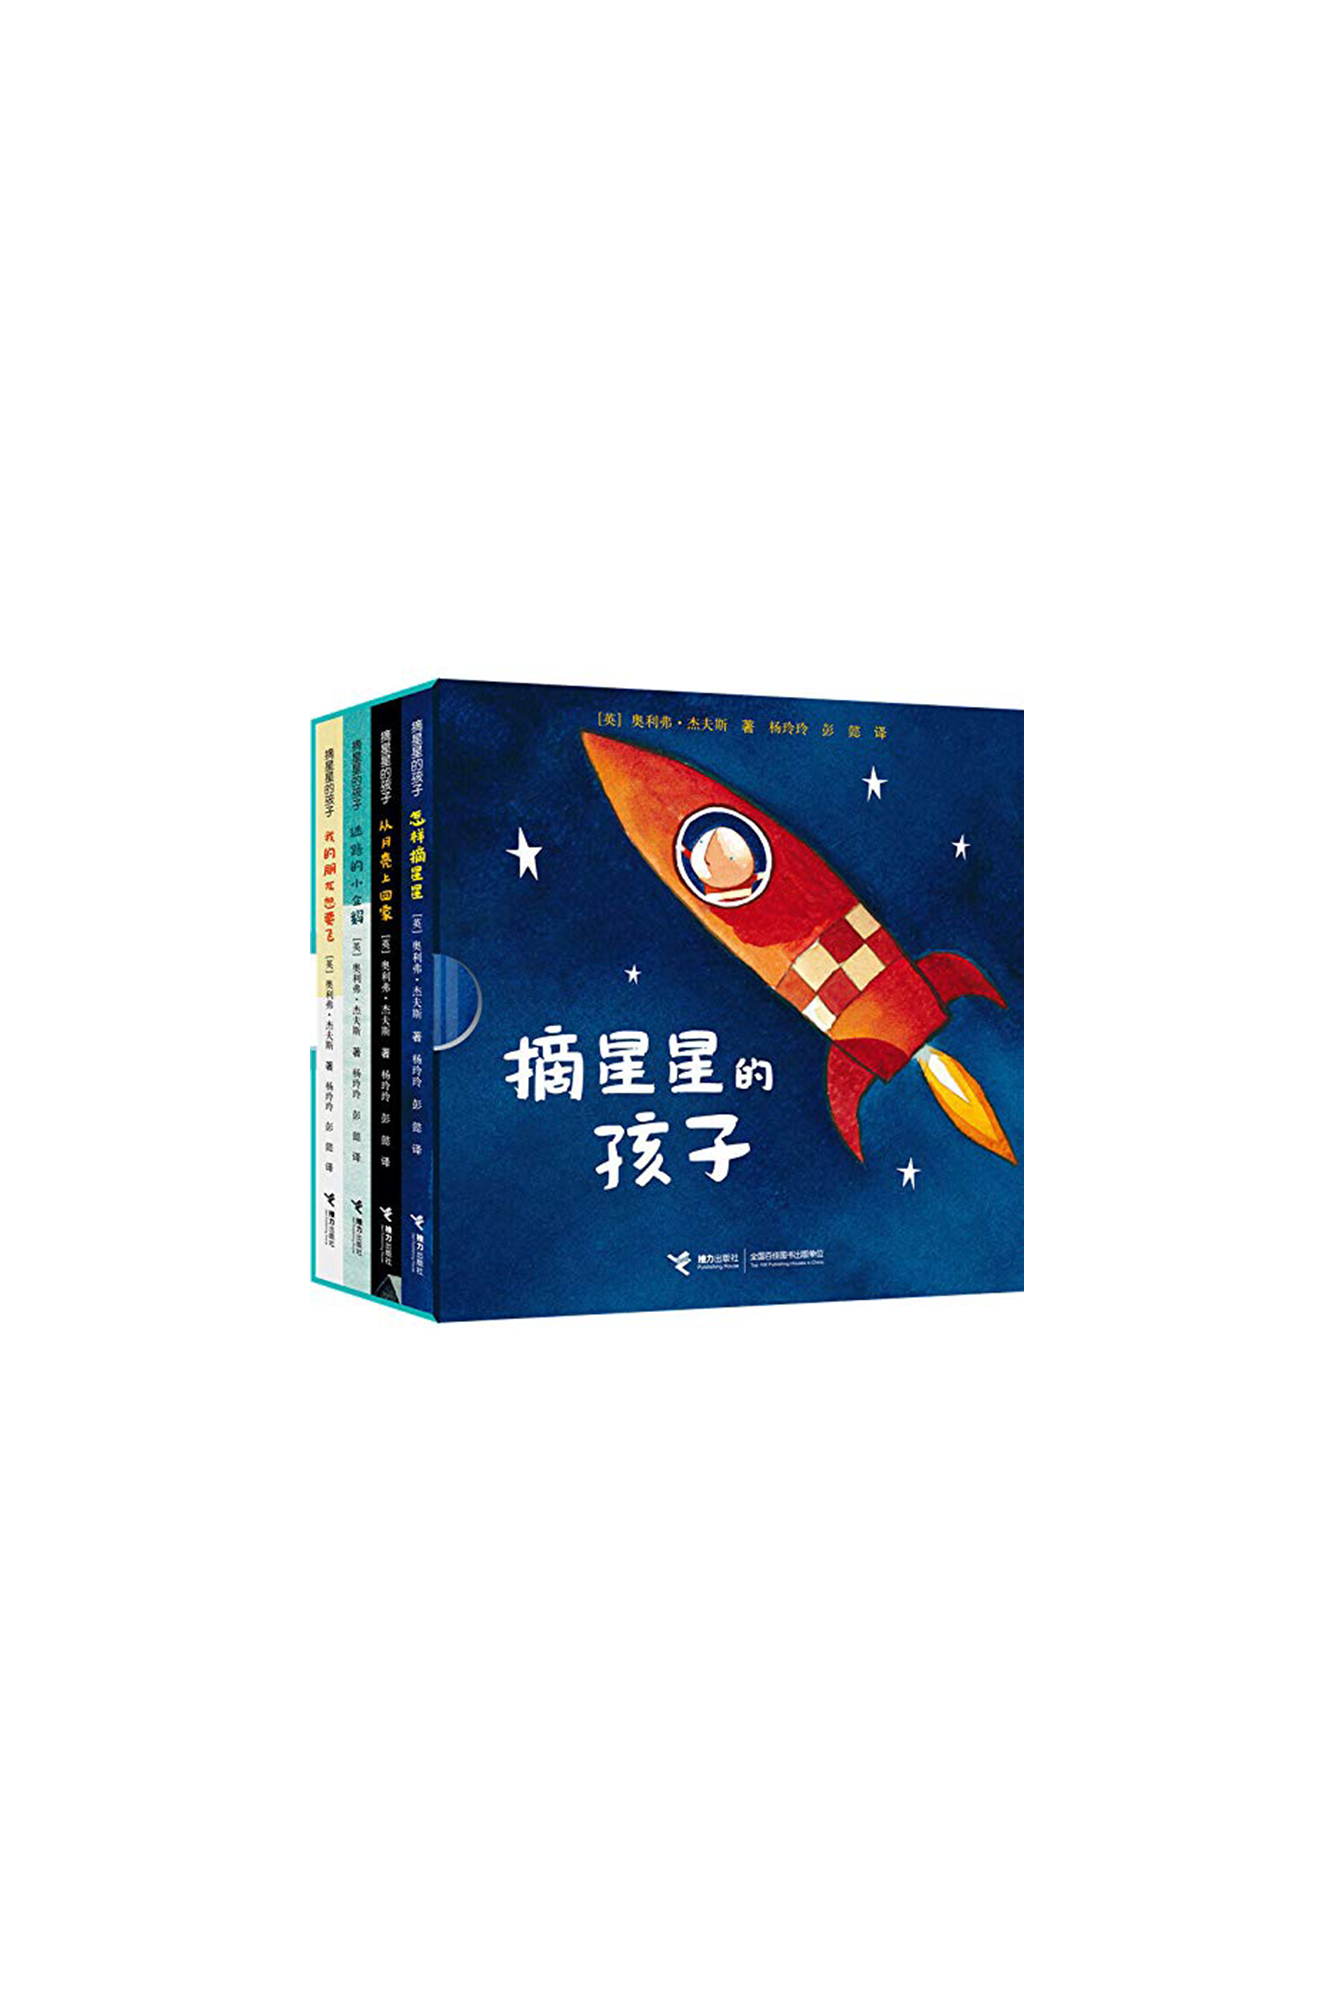 Zhai Xing Xing De Hai Zi series 摘星星的孩子系列